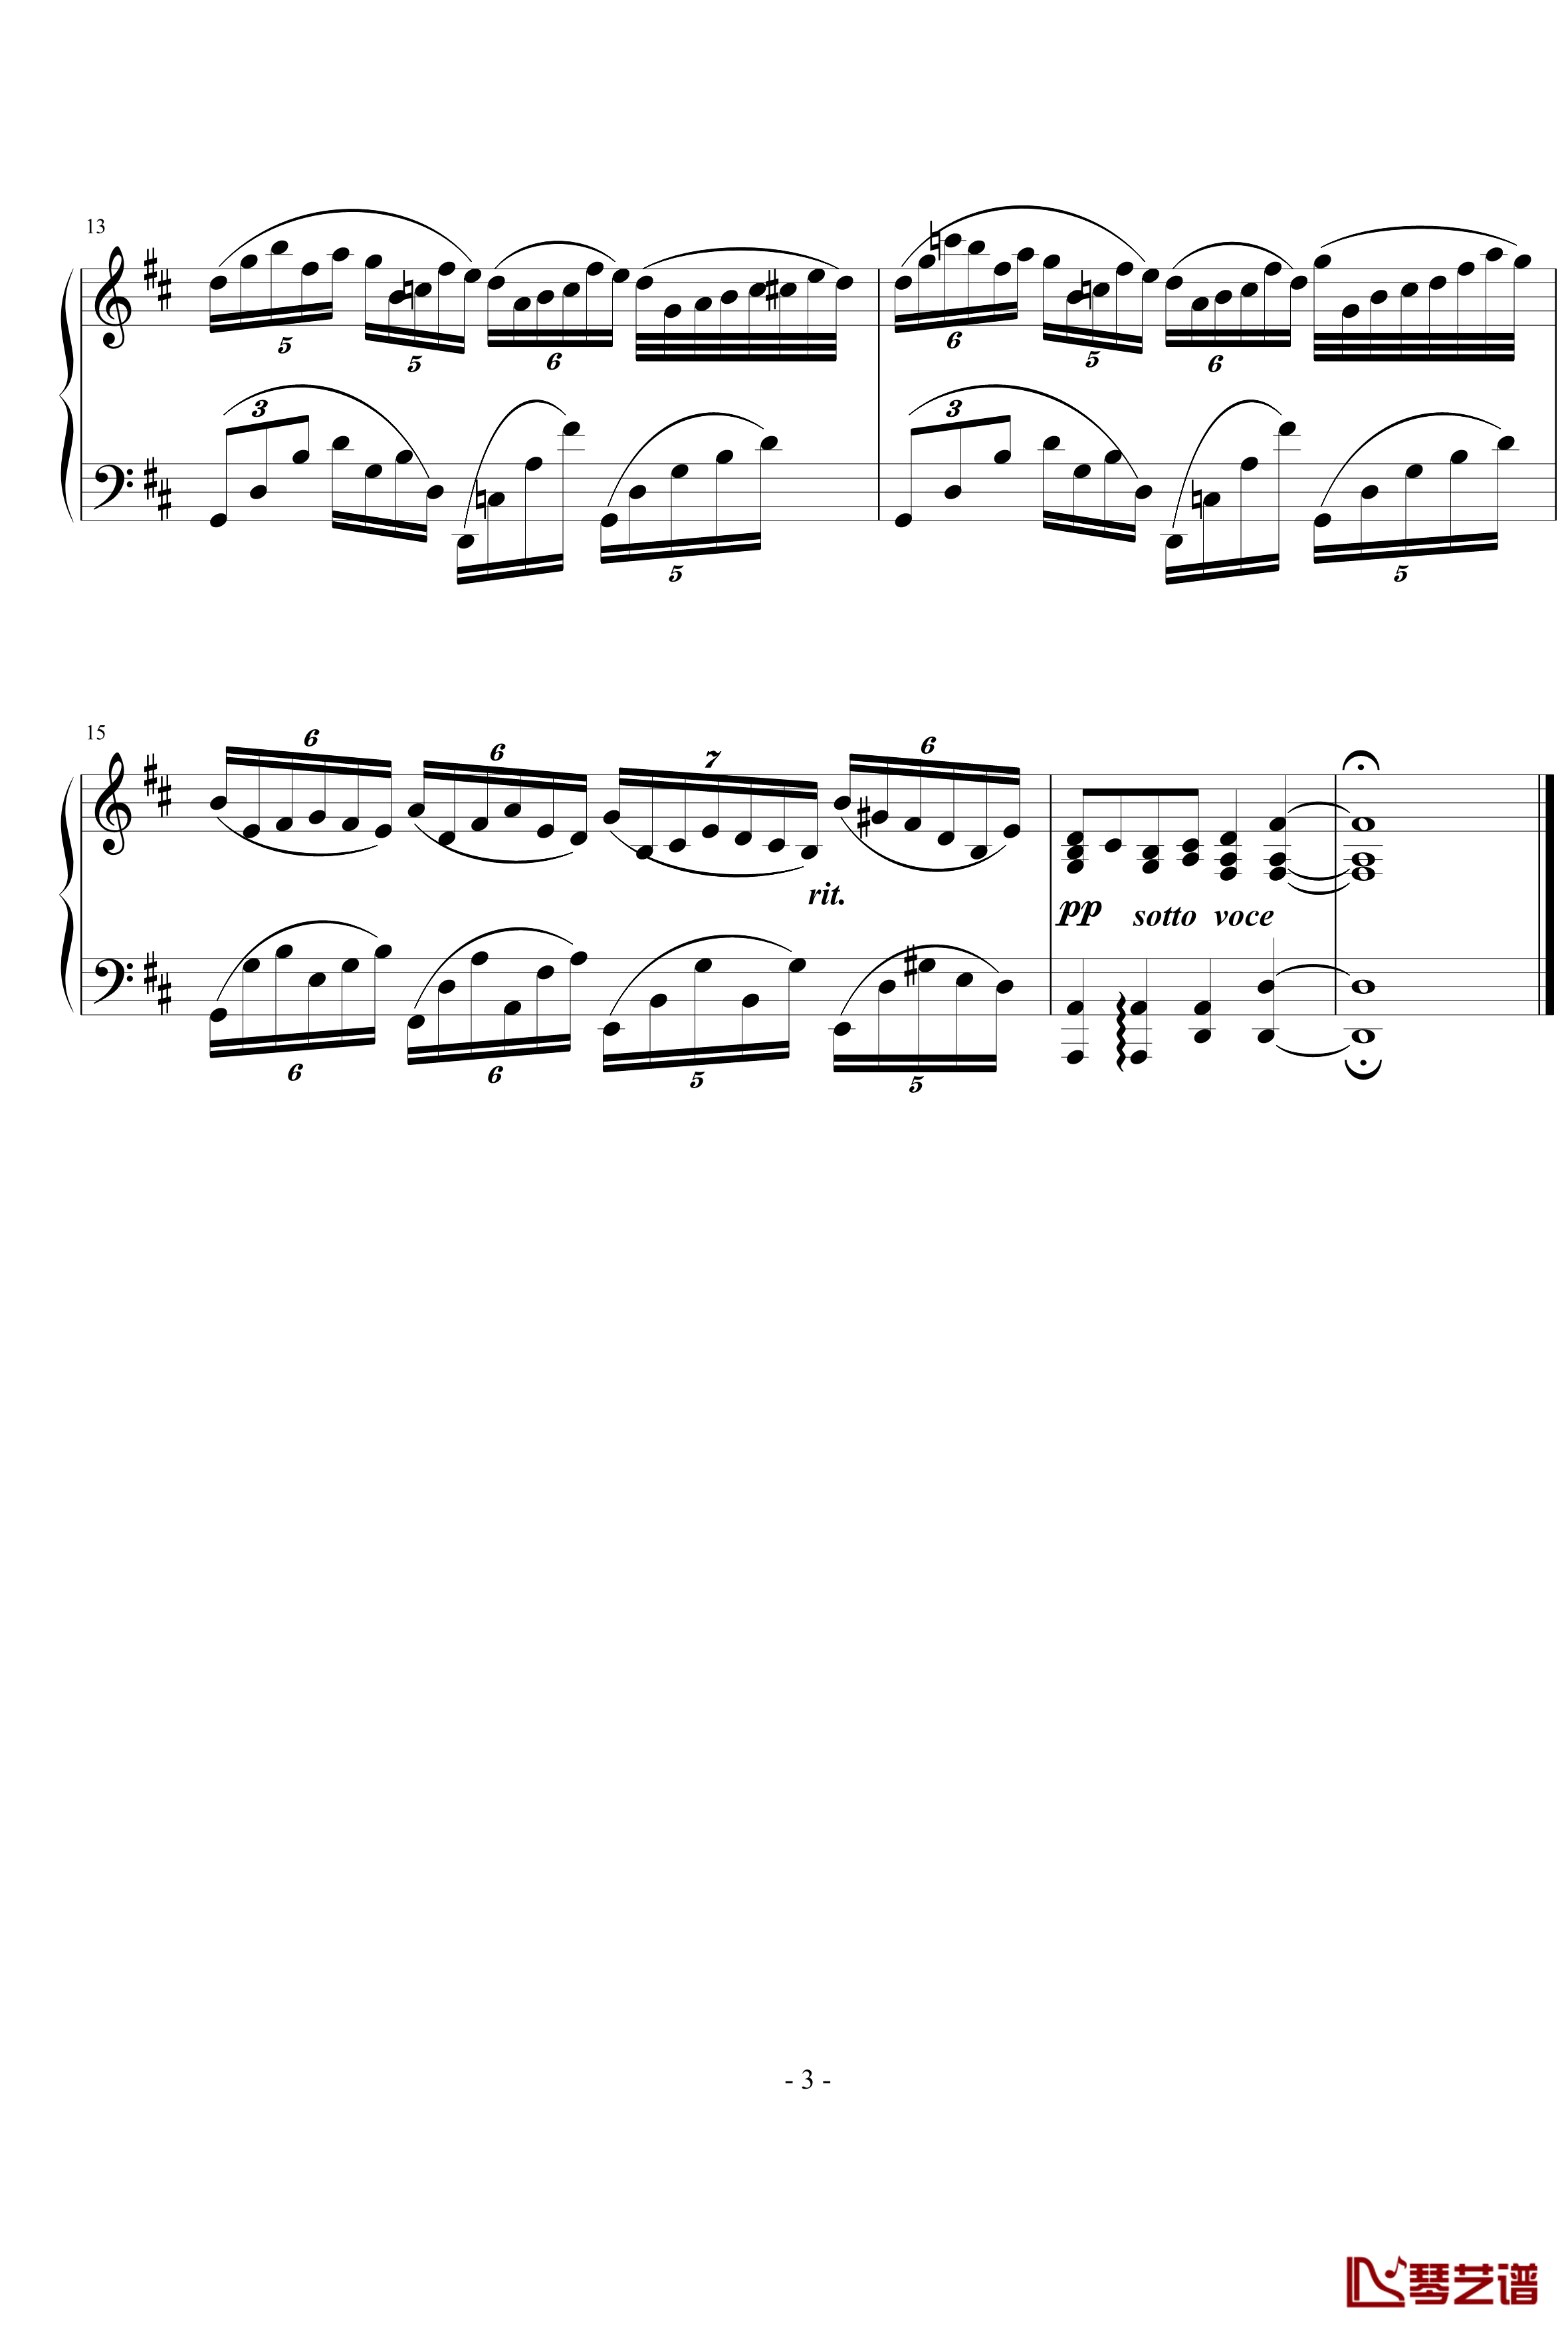 不均等练习曲钢琴谱-nyride3